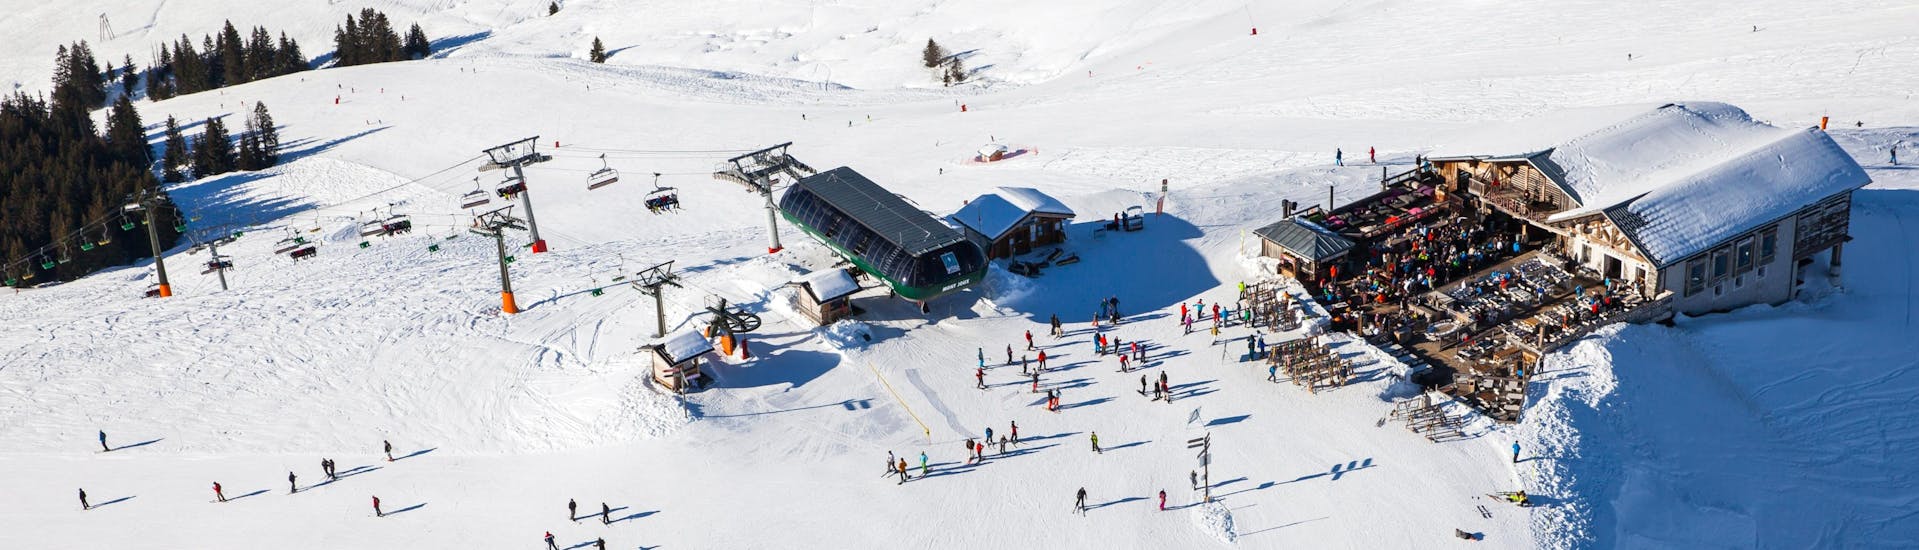 Una maravillosa vista de un soleado paisaje en la cima de la estación de esquí Saint Gervais, punto de encuentro de las escuelas de esquí para comenzar sus clases de esquí y snowboard.